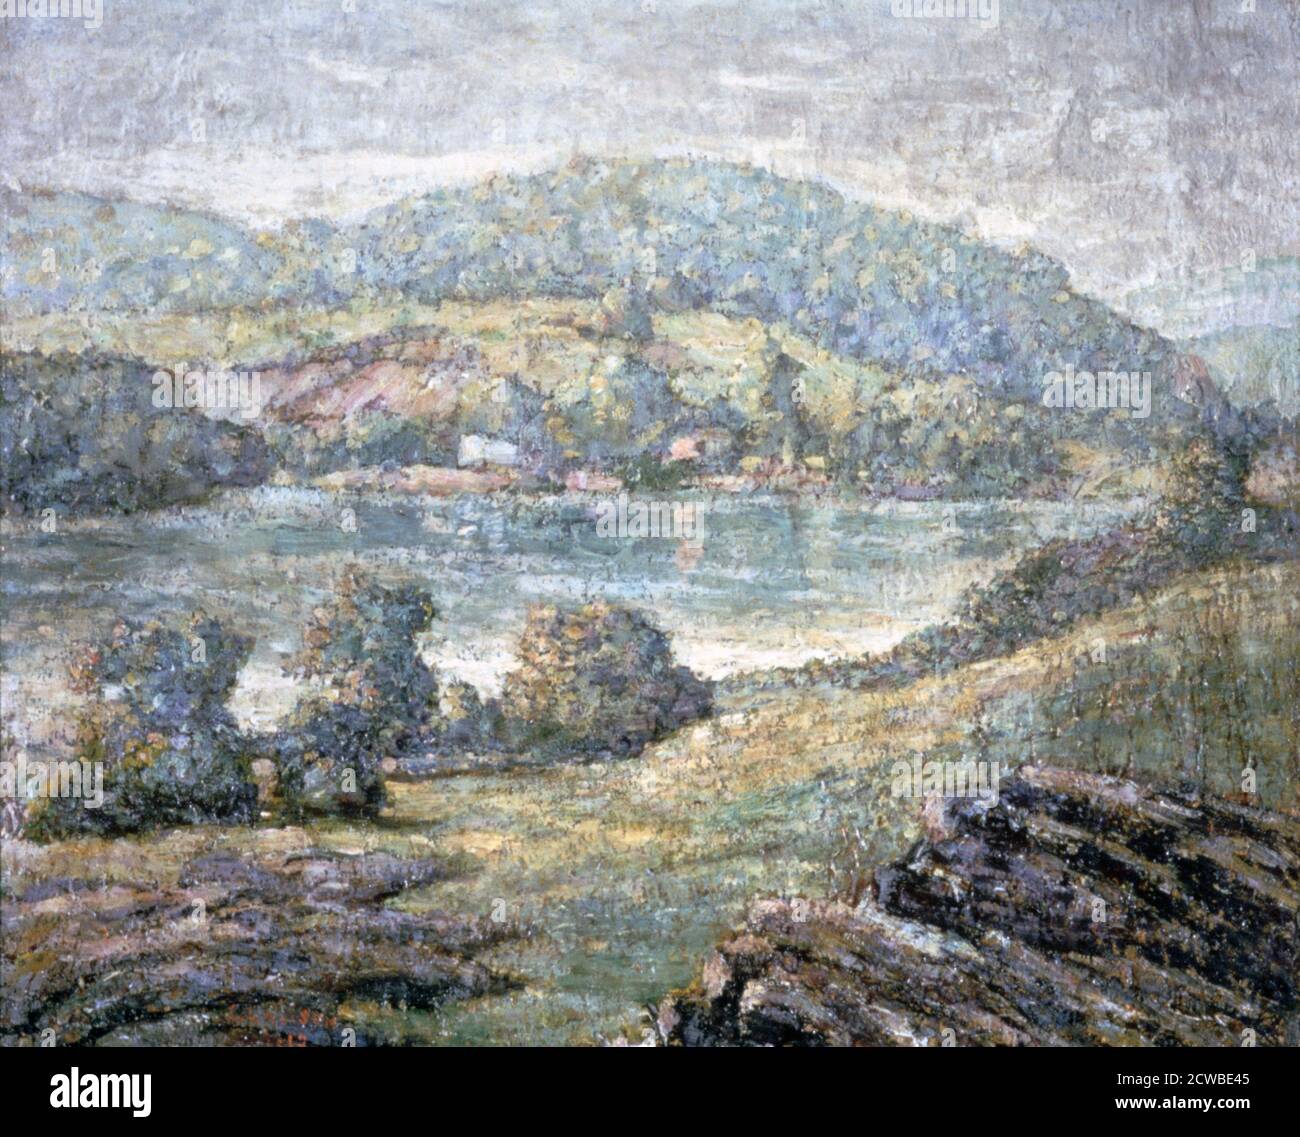 'Morning Light, River Valley, Connecticut', 1919 Artist: Ernest Lawson. Lawson era uno degli otto pittori realisti del genere, chiamati anche Ashcan School. Ma oggi è meglio conosciuto per i suoi paesaggi impressionisti. Foto Stock